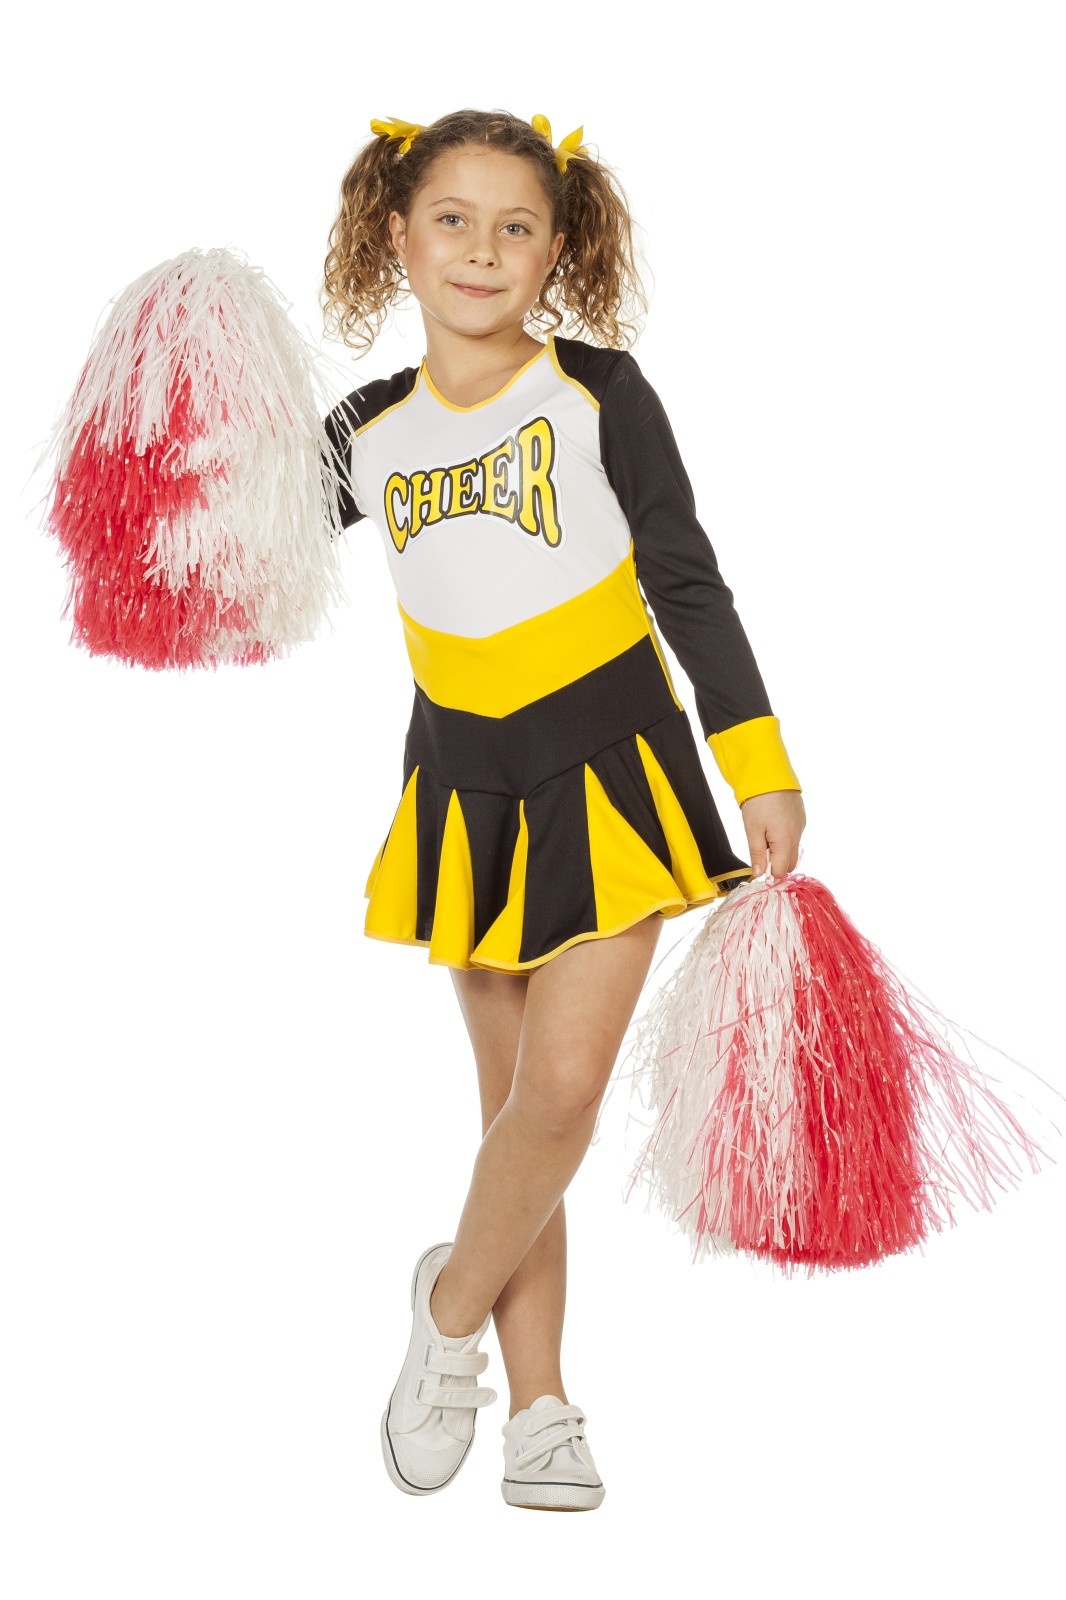 Cheerleader jurkje kind zwart/wit/geel